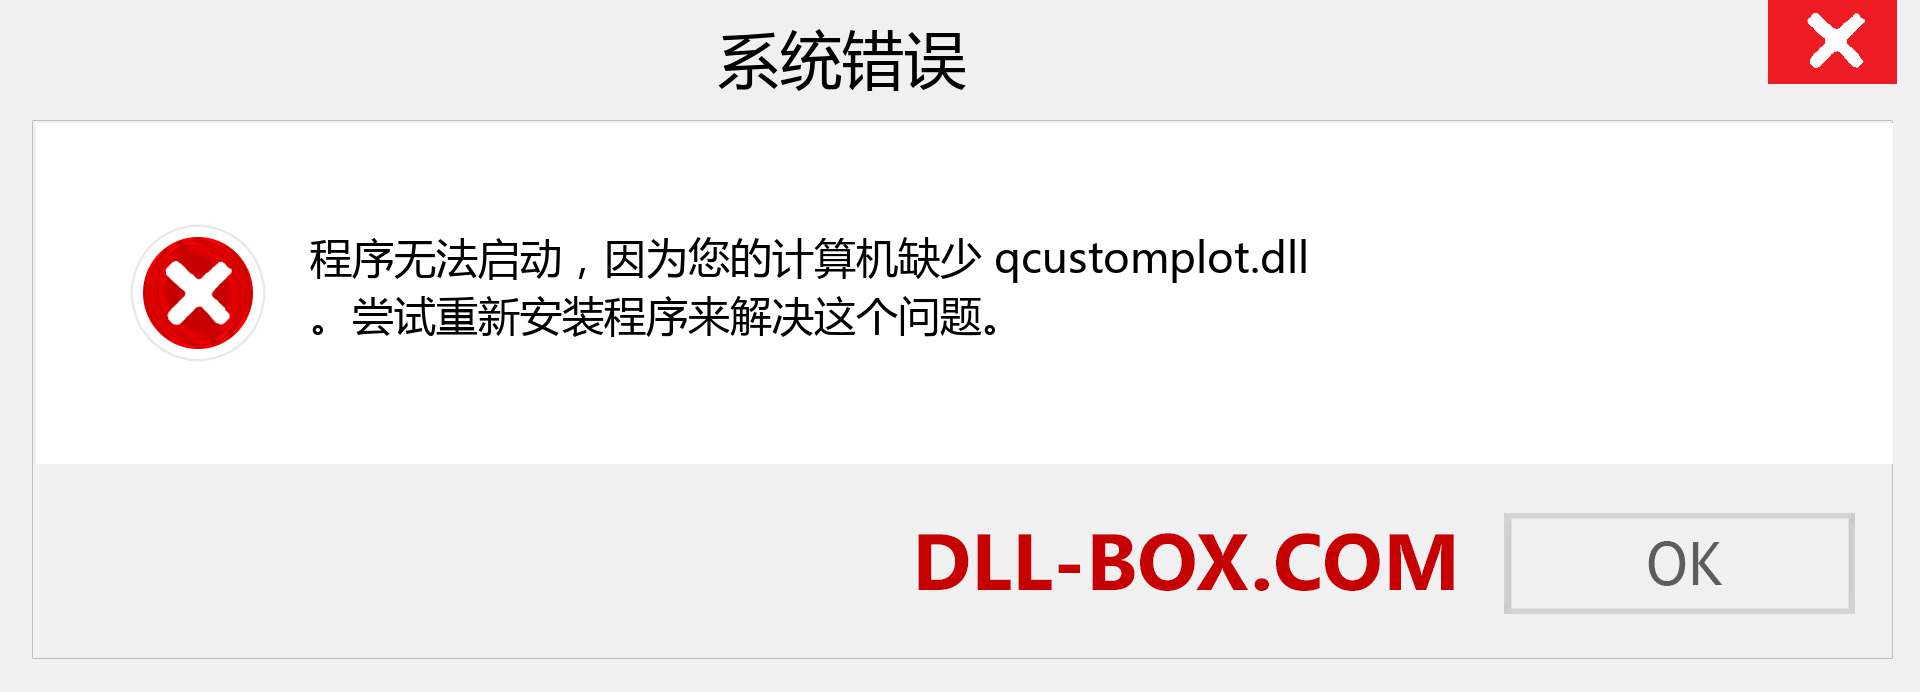 qcustomplot.dll 文件丢失？。 适用于 Windows 7、8、10 的下载 - 修复 Windows、照片、图像上的 qcustomplot dll 丢失错误